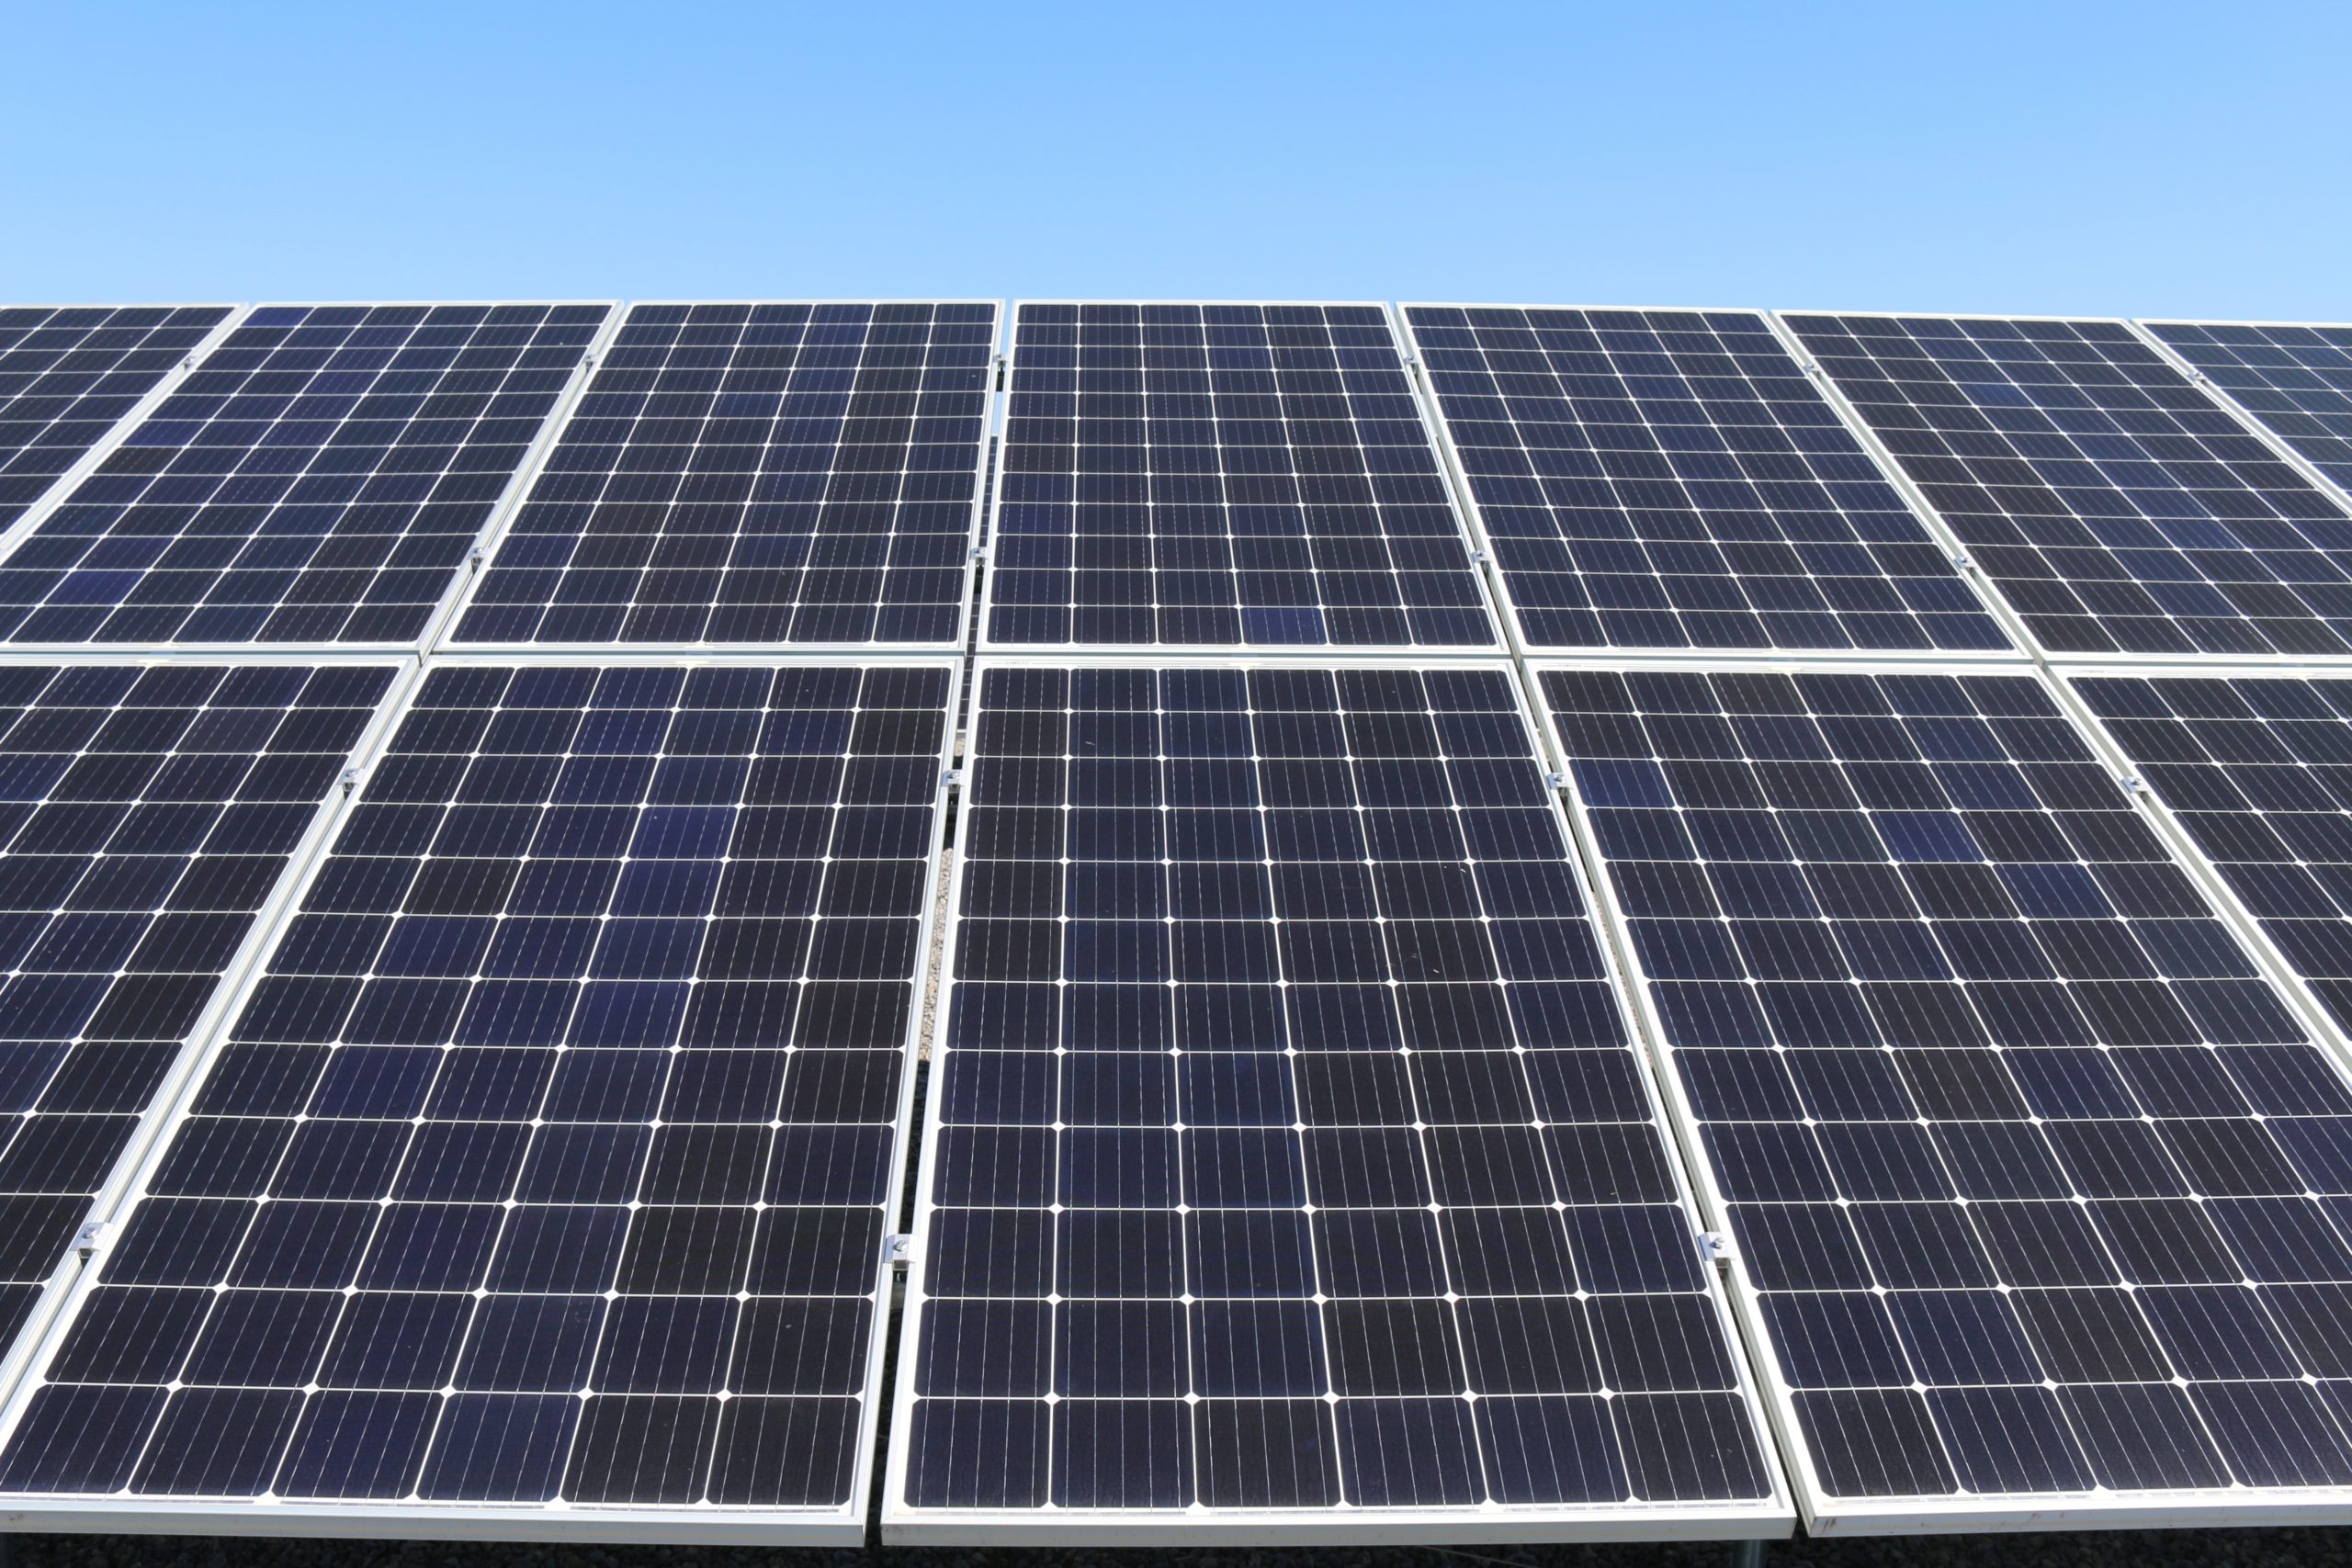 Ventajas de la energía solar fotovoltaica